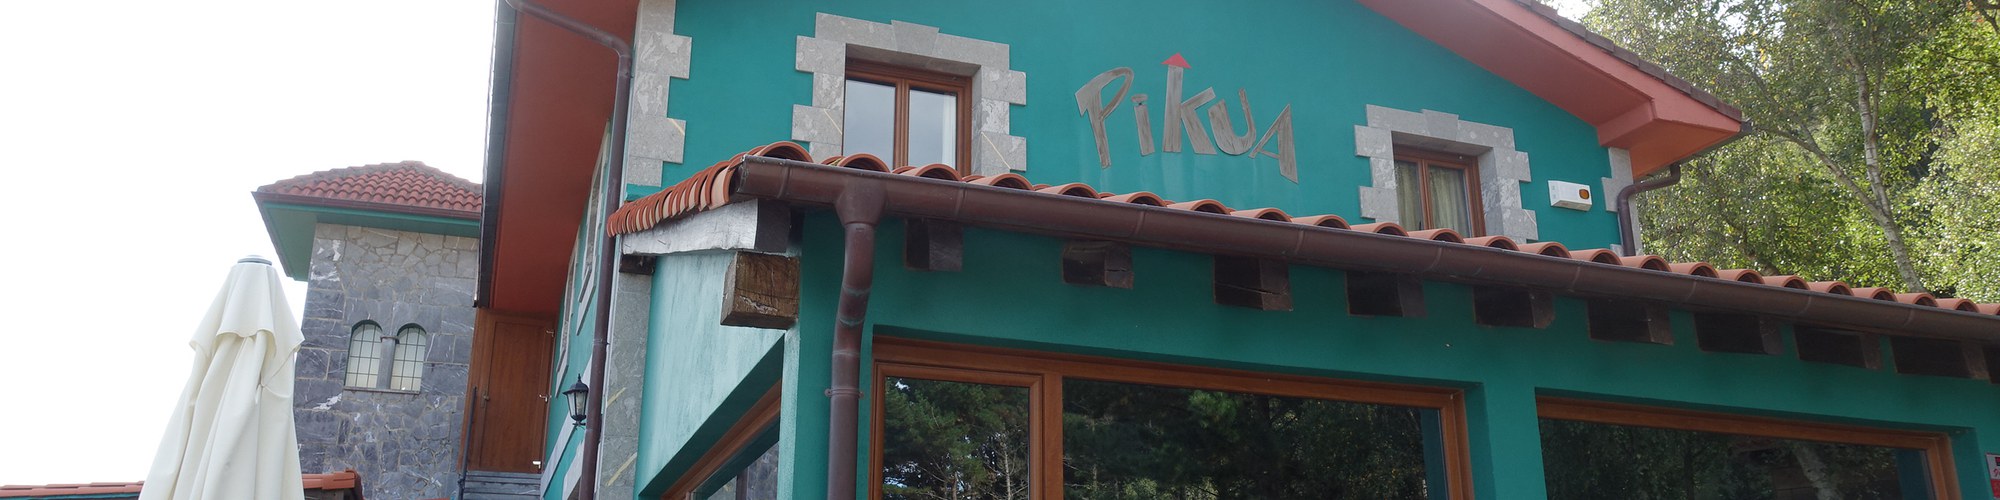 Restaurante Pikua